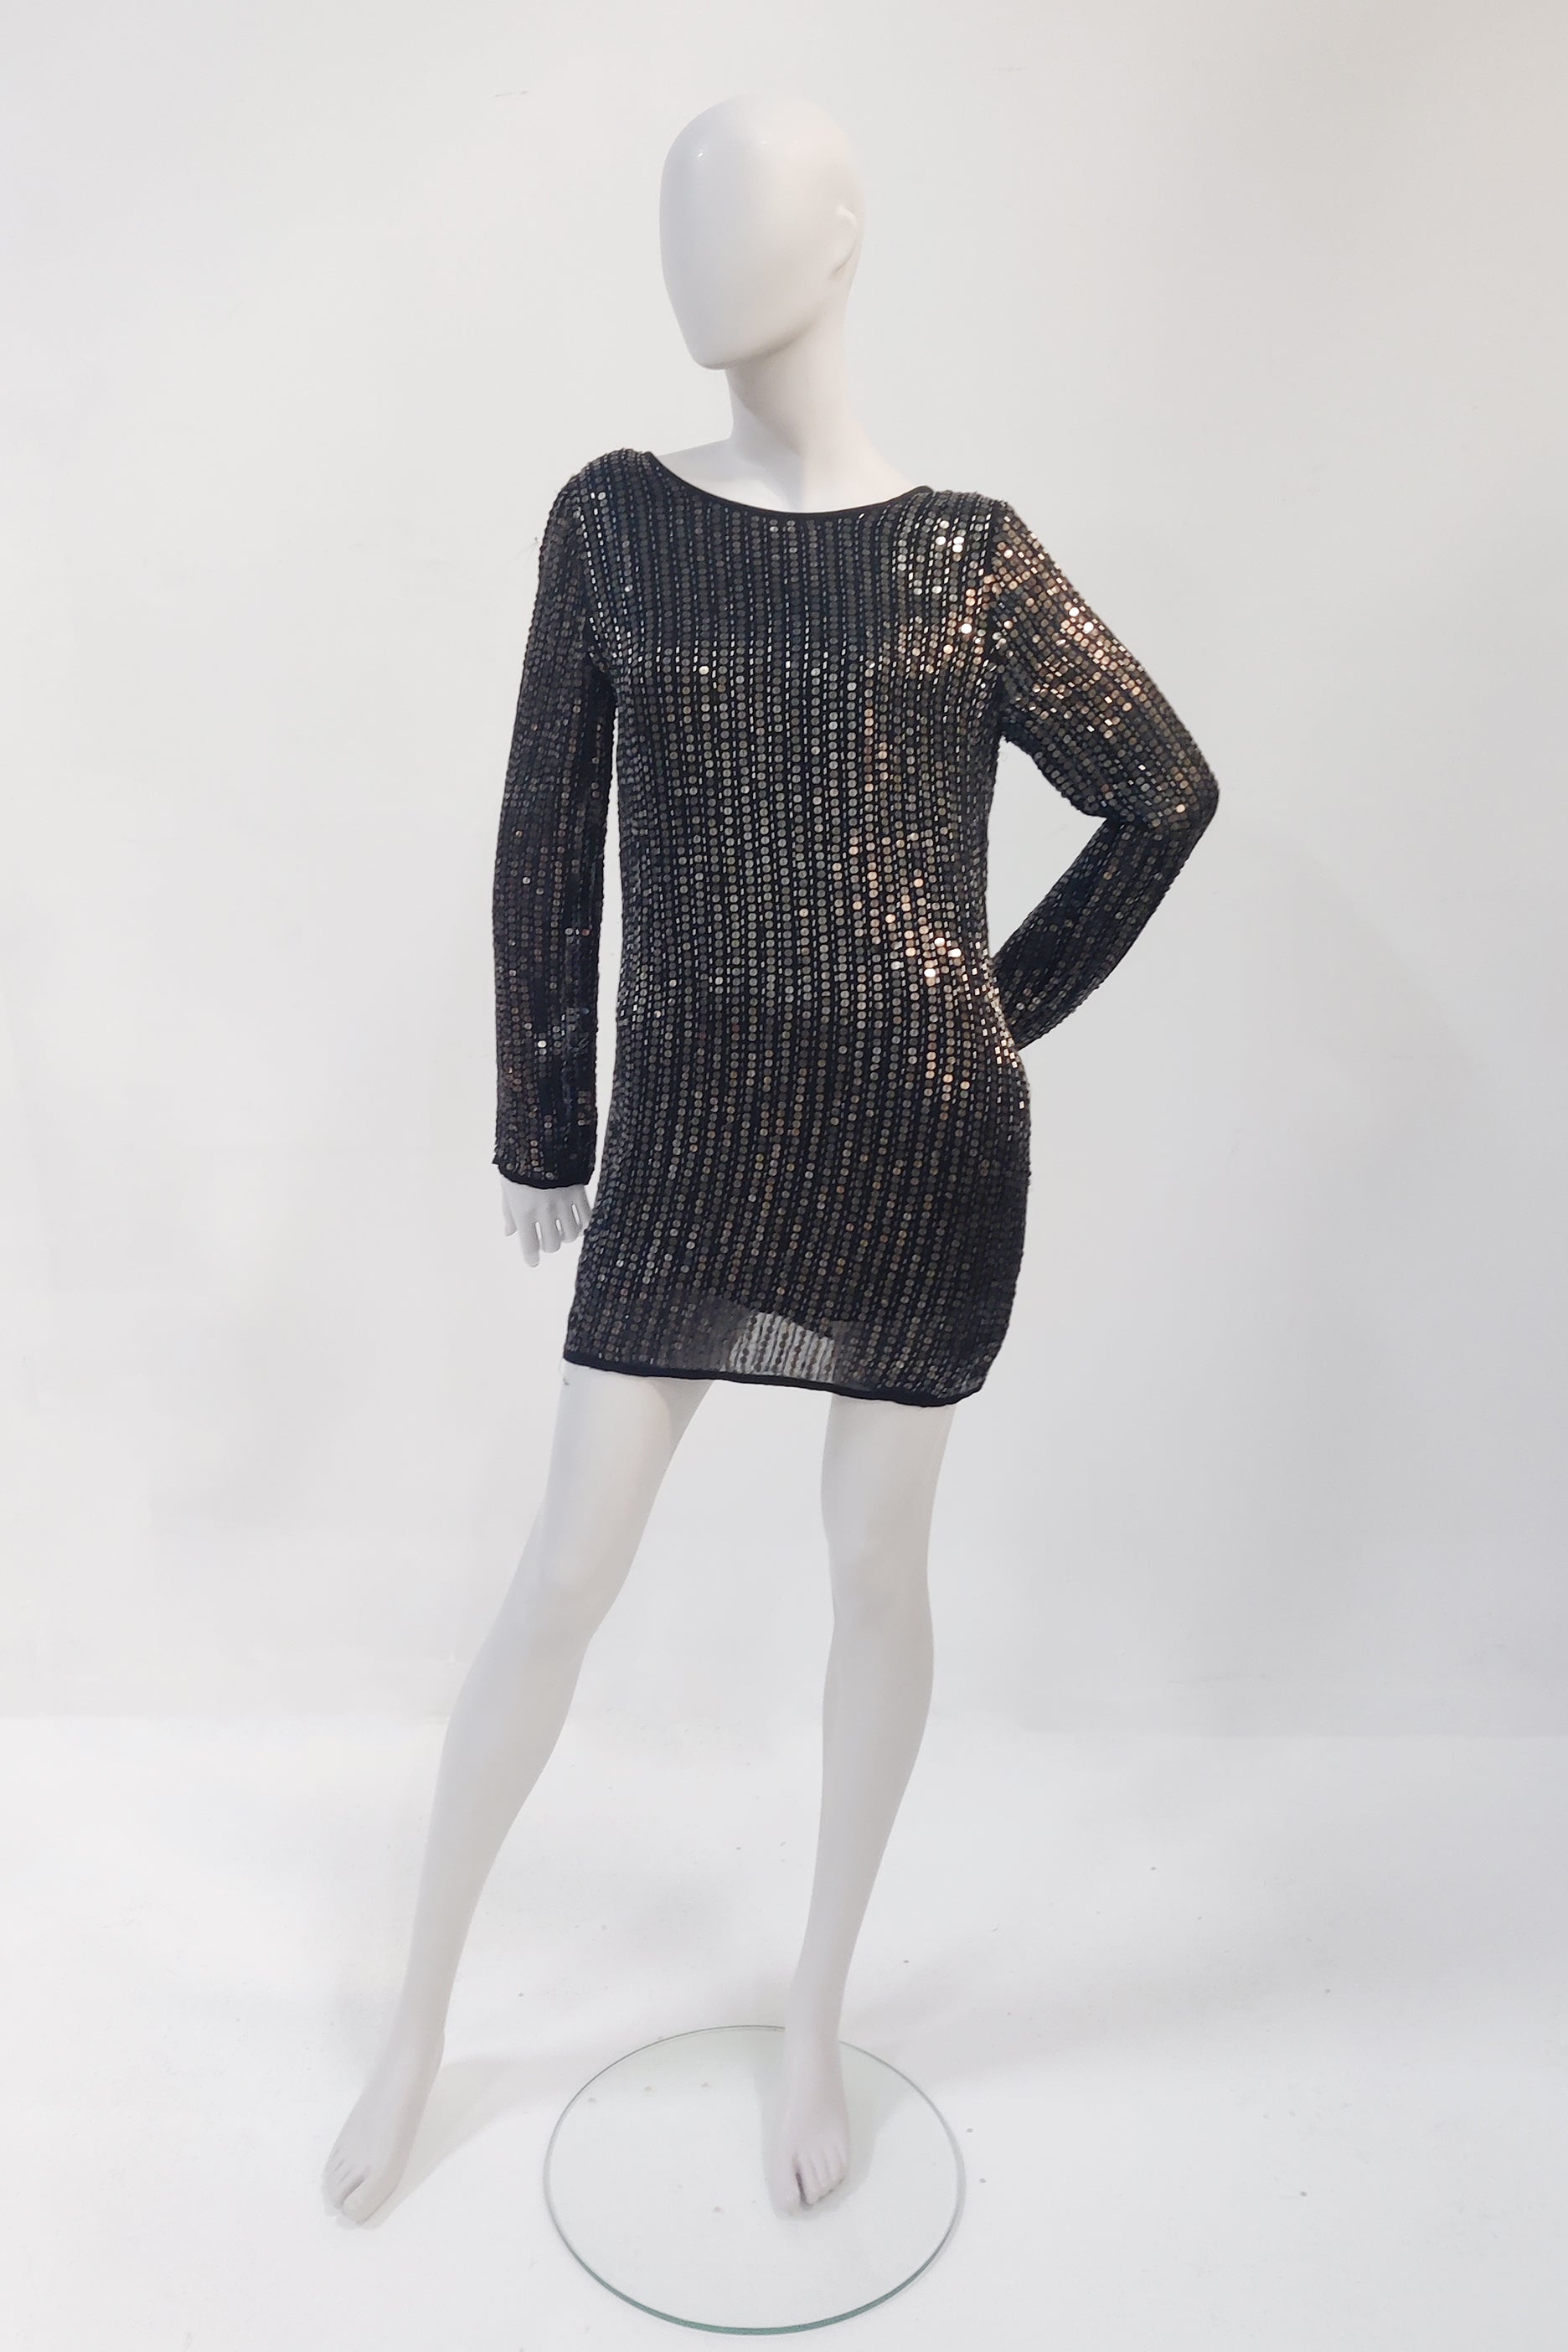 Black/Gold  Sequin Dress (Eu38-40)